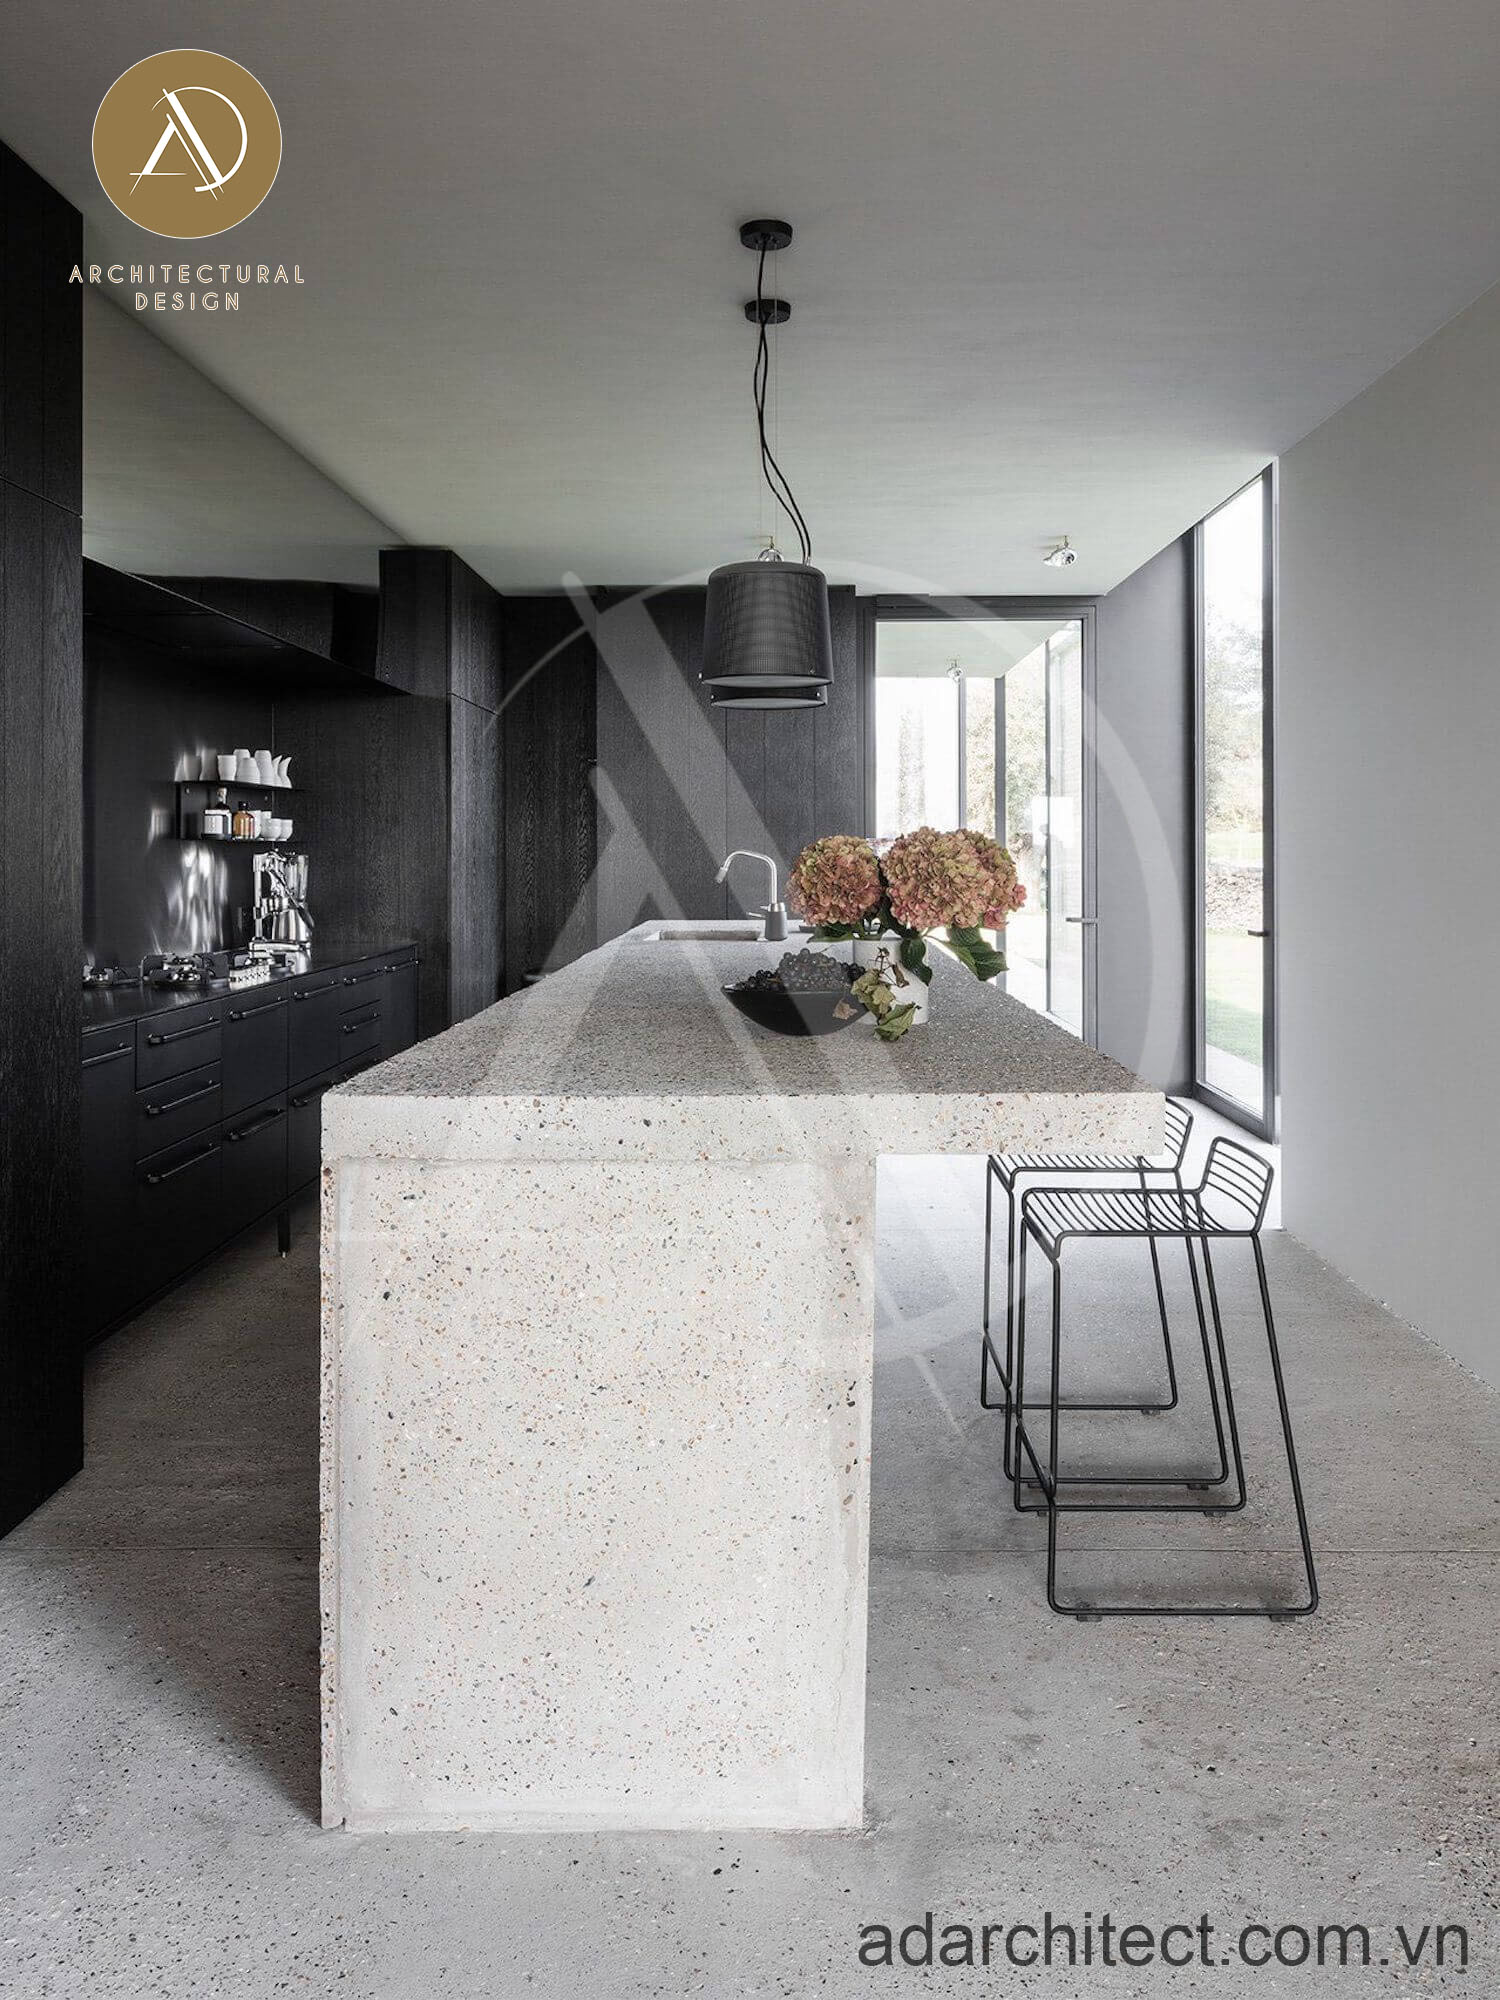 Sàn bếp và bàn ăn sử dụng xi măng đá, tạo khác biệt trong phong cách thiết kế